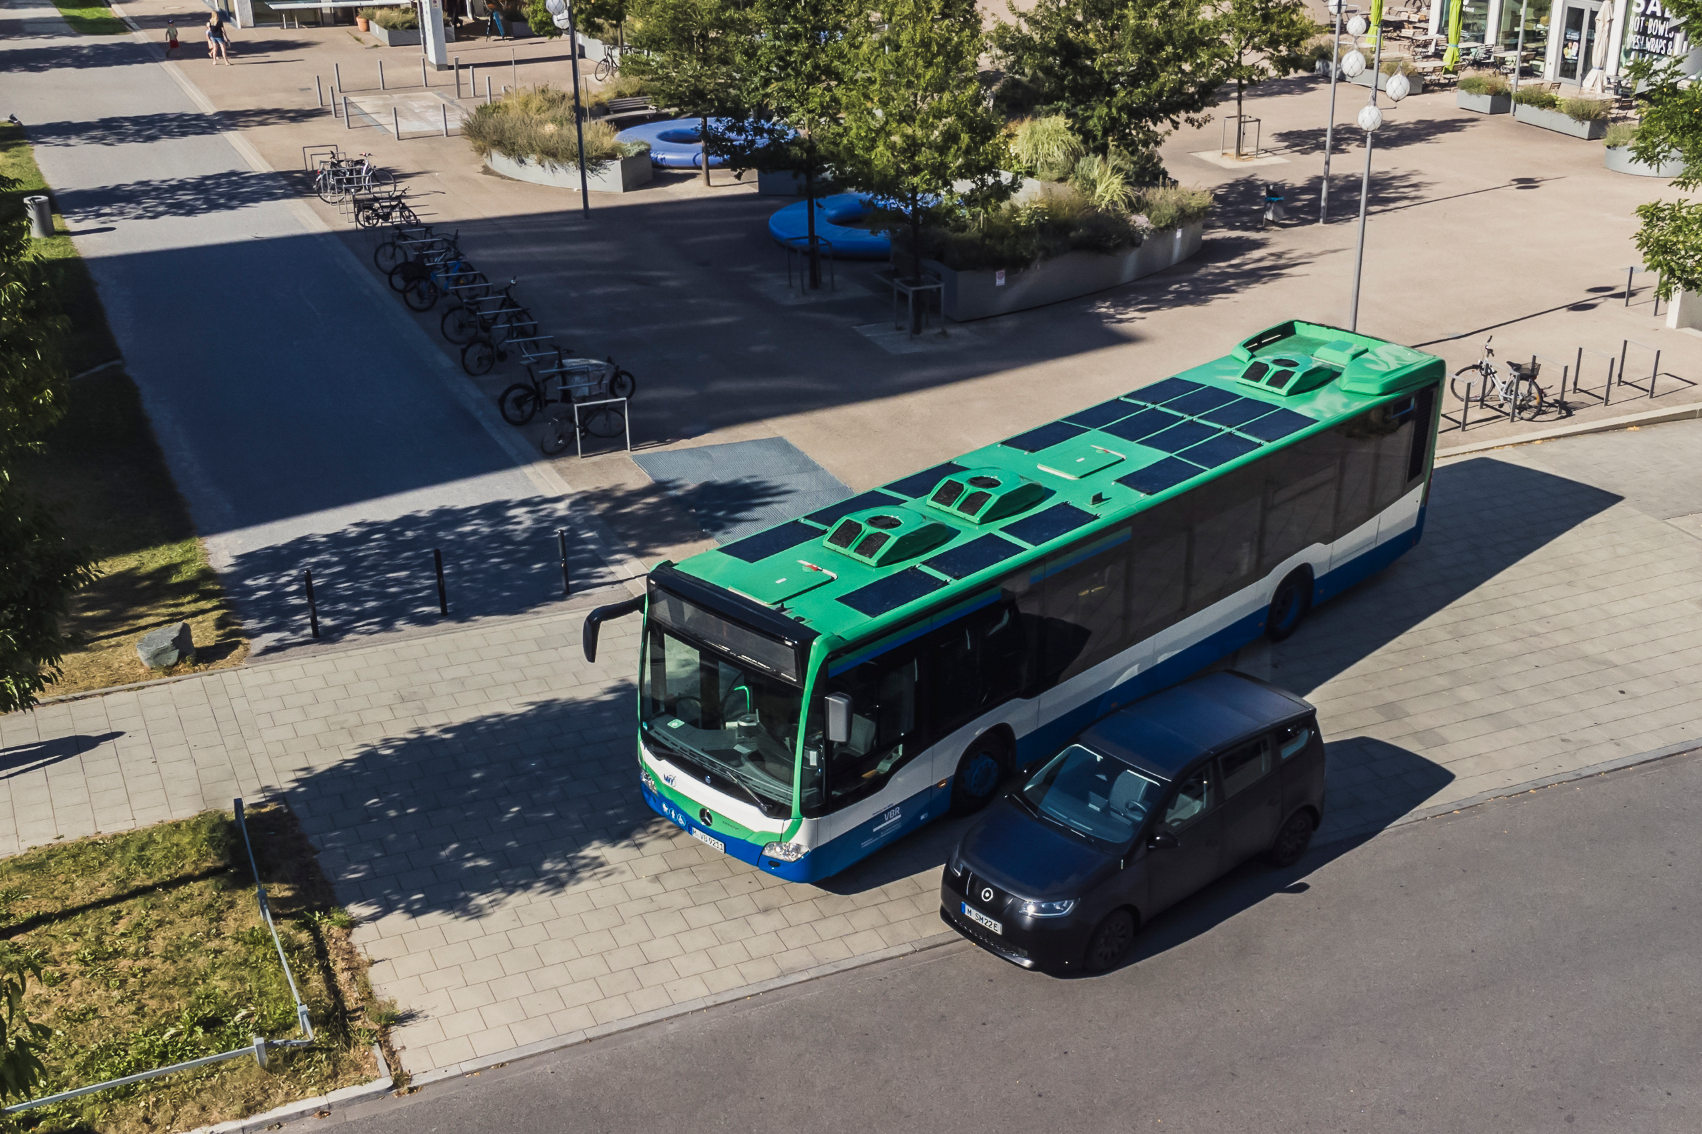 Вид с высоты птичьего полета на комплект солнечных батарей Sono Motors для автобусов — солнечные панели на верхней части зеленого автобуса